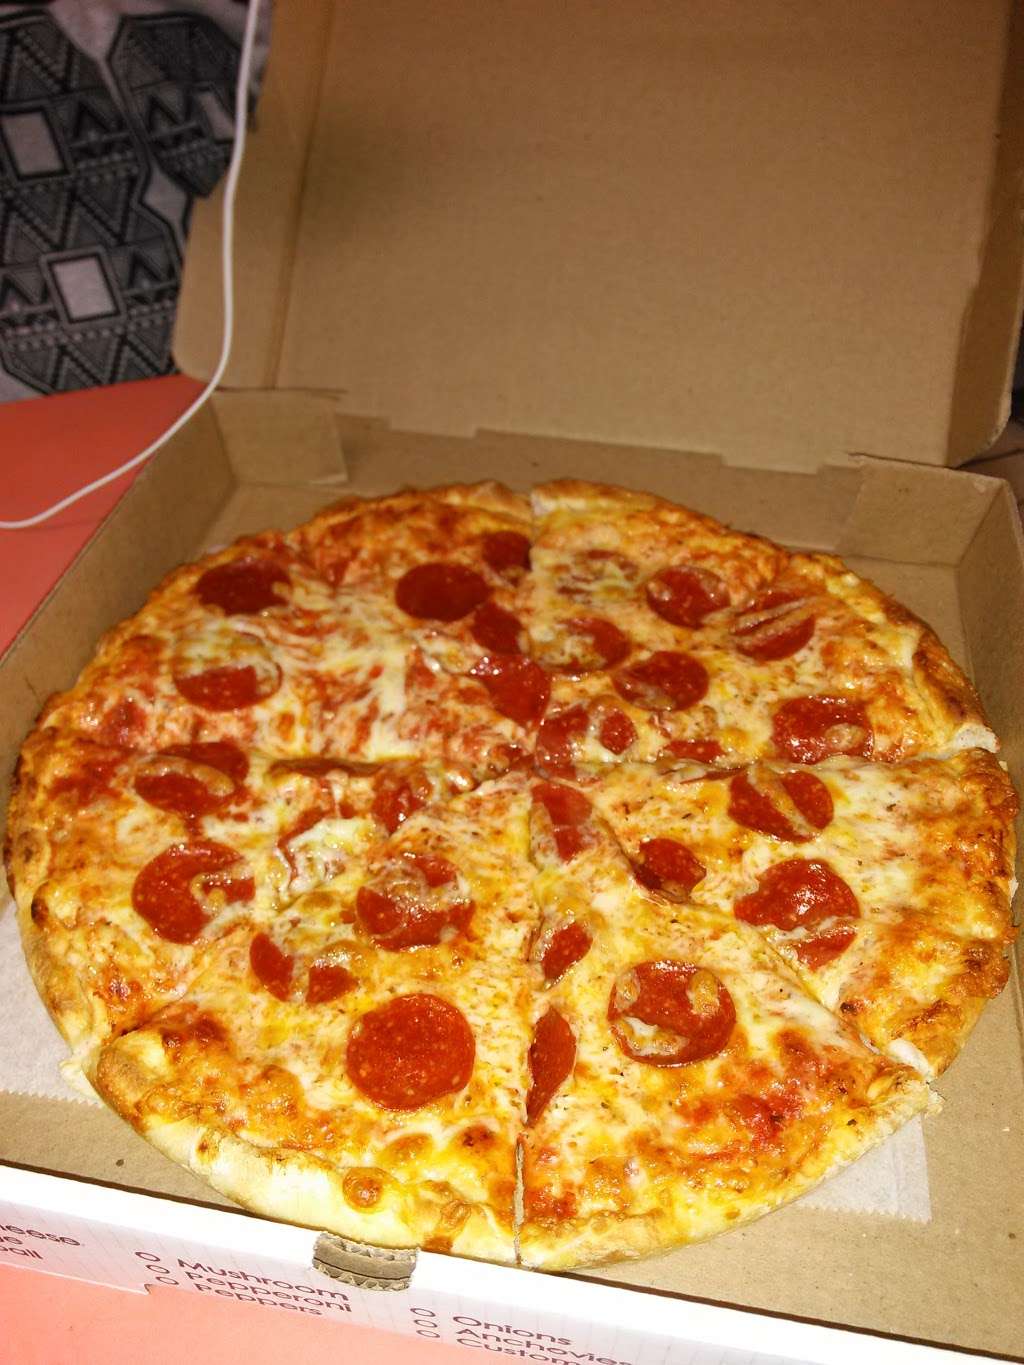 Panorama Pizza | 470 E Ashland St, Brockton, MA 02302, USA | Phone: (508) 588-4714